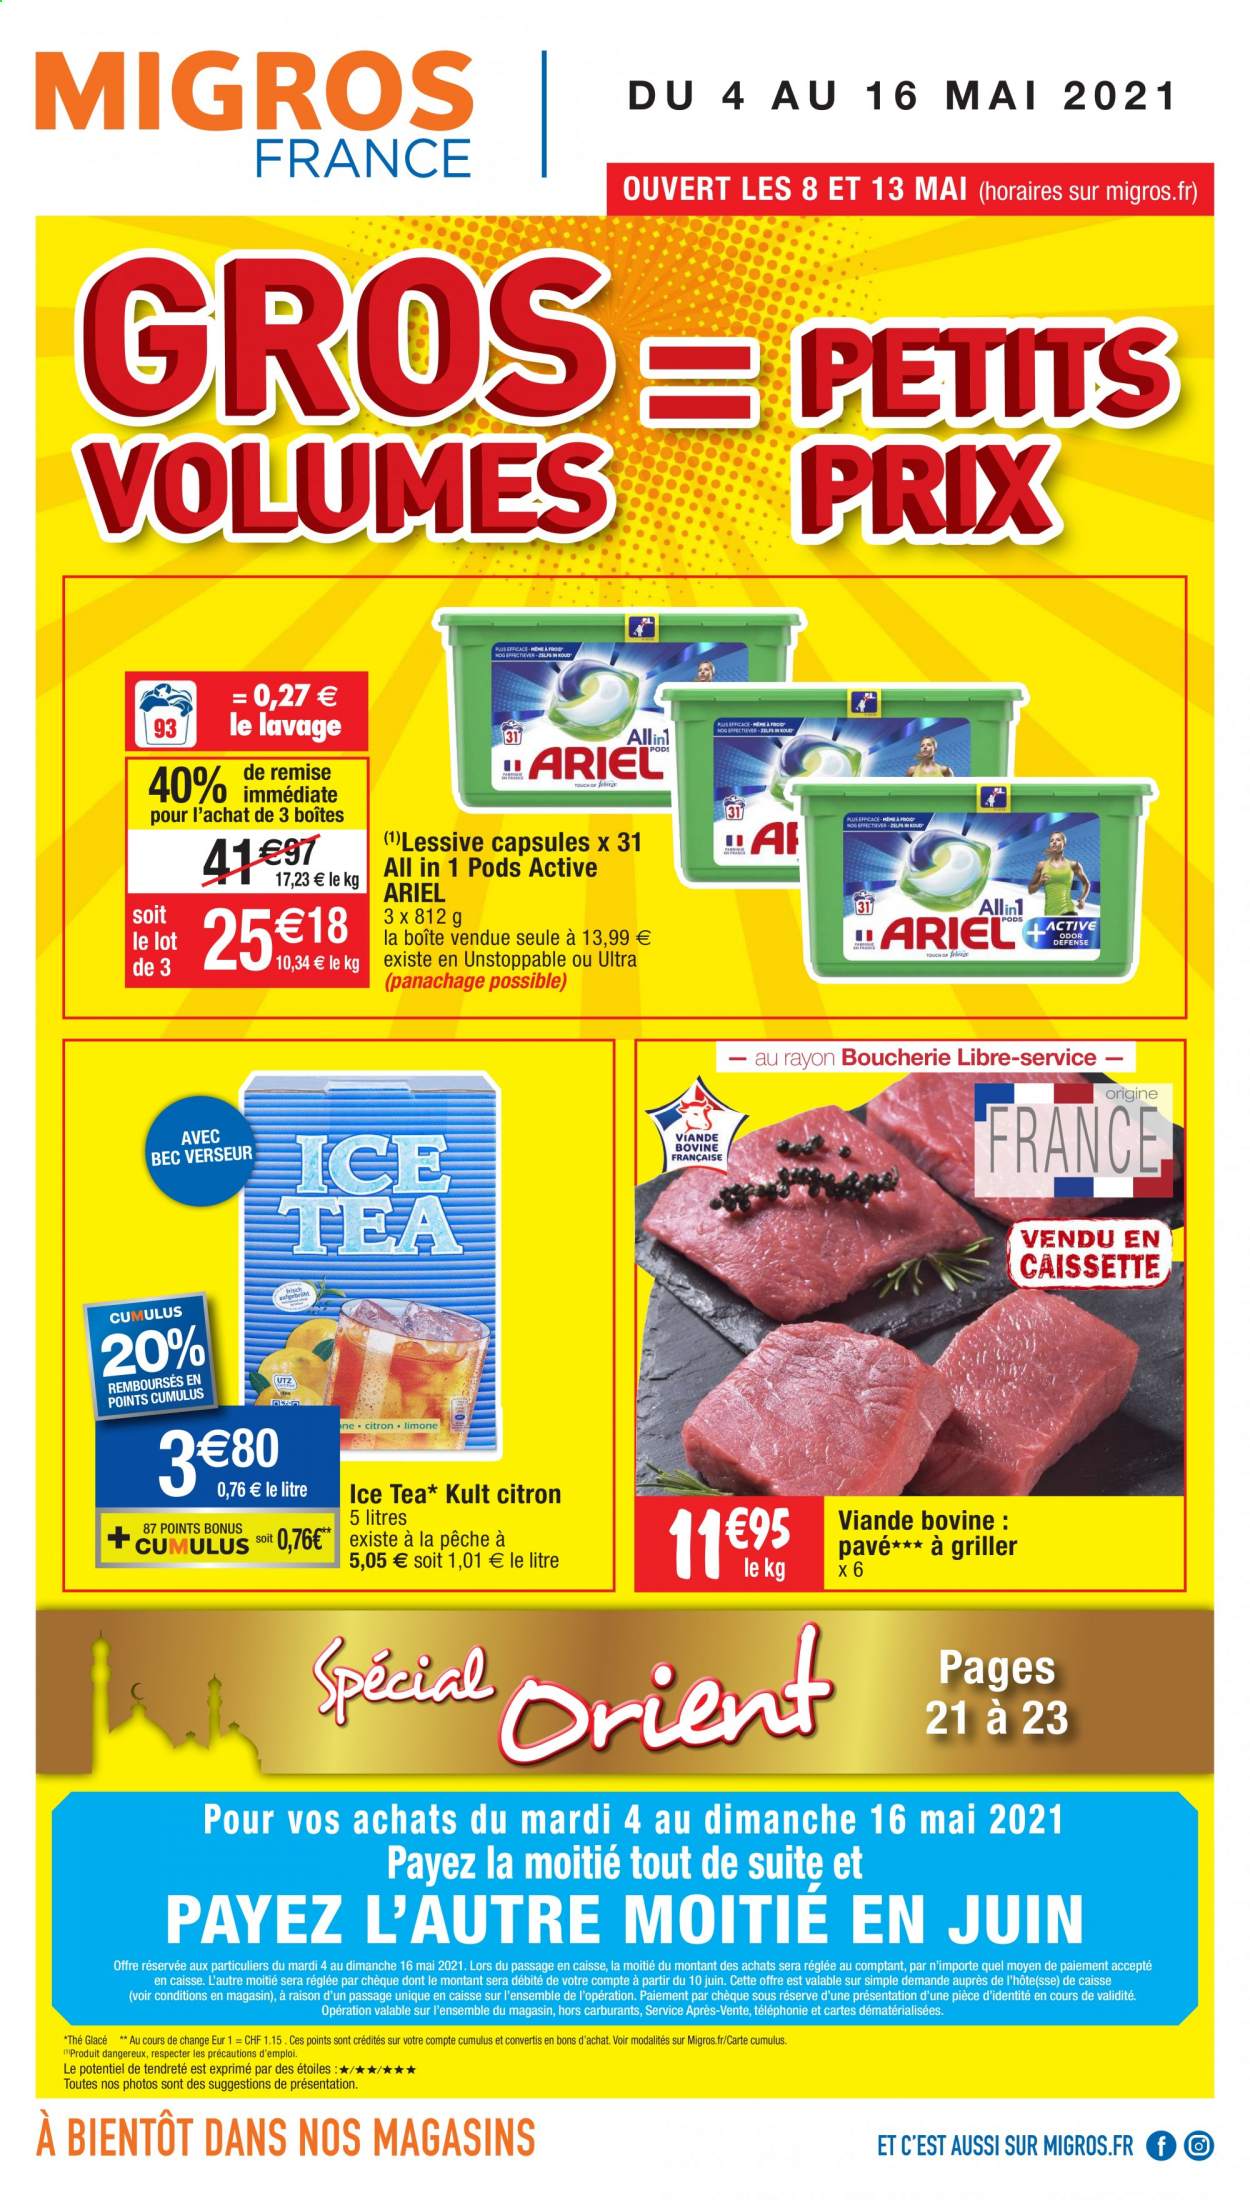 thumbnail - Catalogue Migros France - 04/05/2021 - 16/05/2021 - Produits soldés - thé glacé, thé, Ariel, lessive. Page 1.